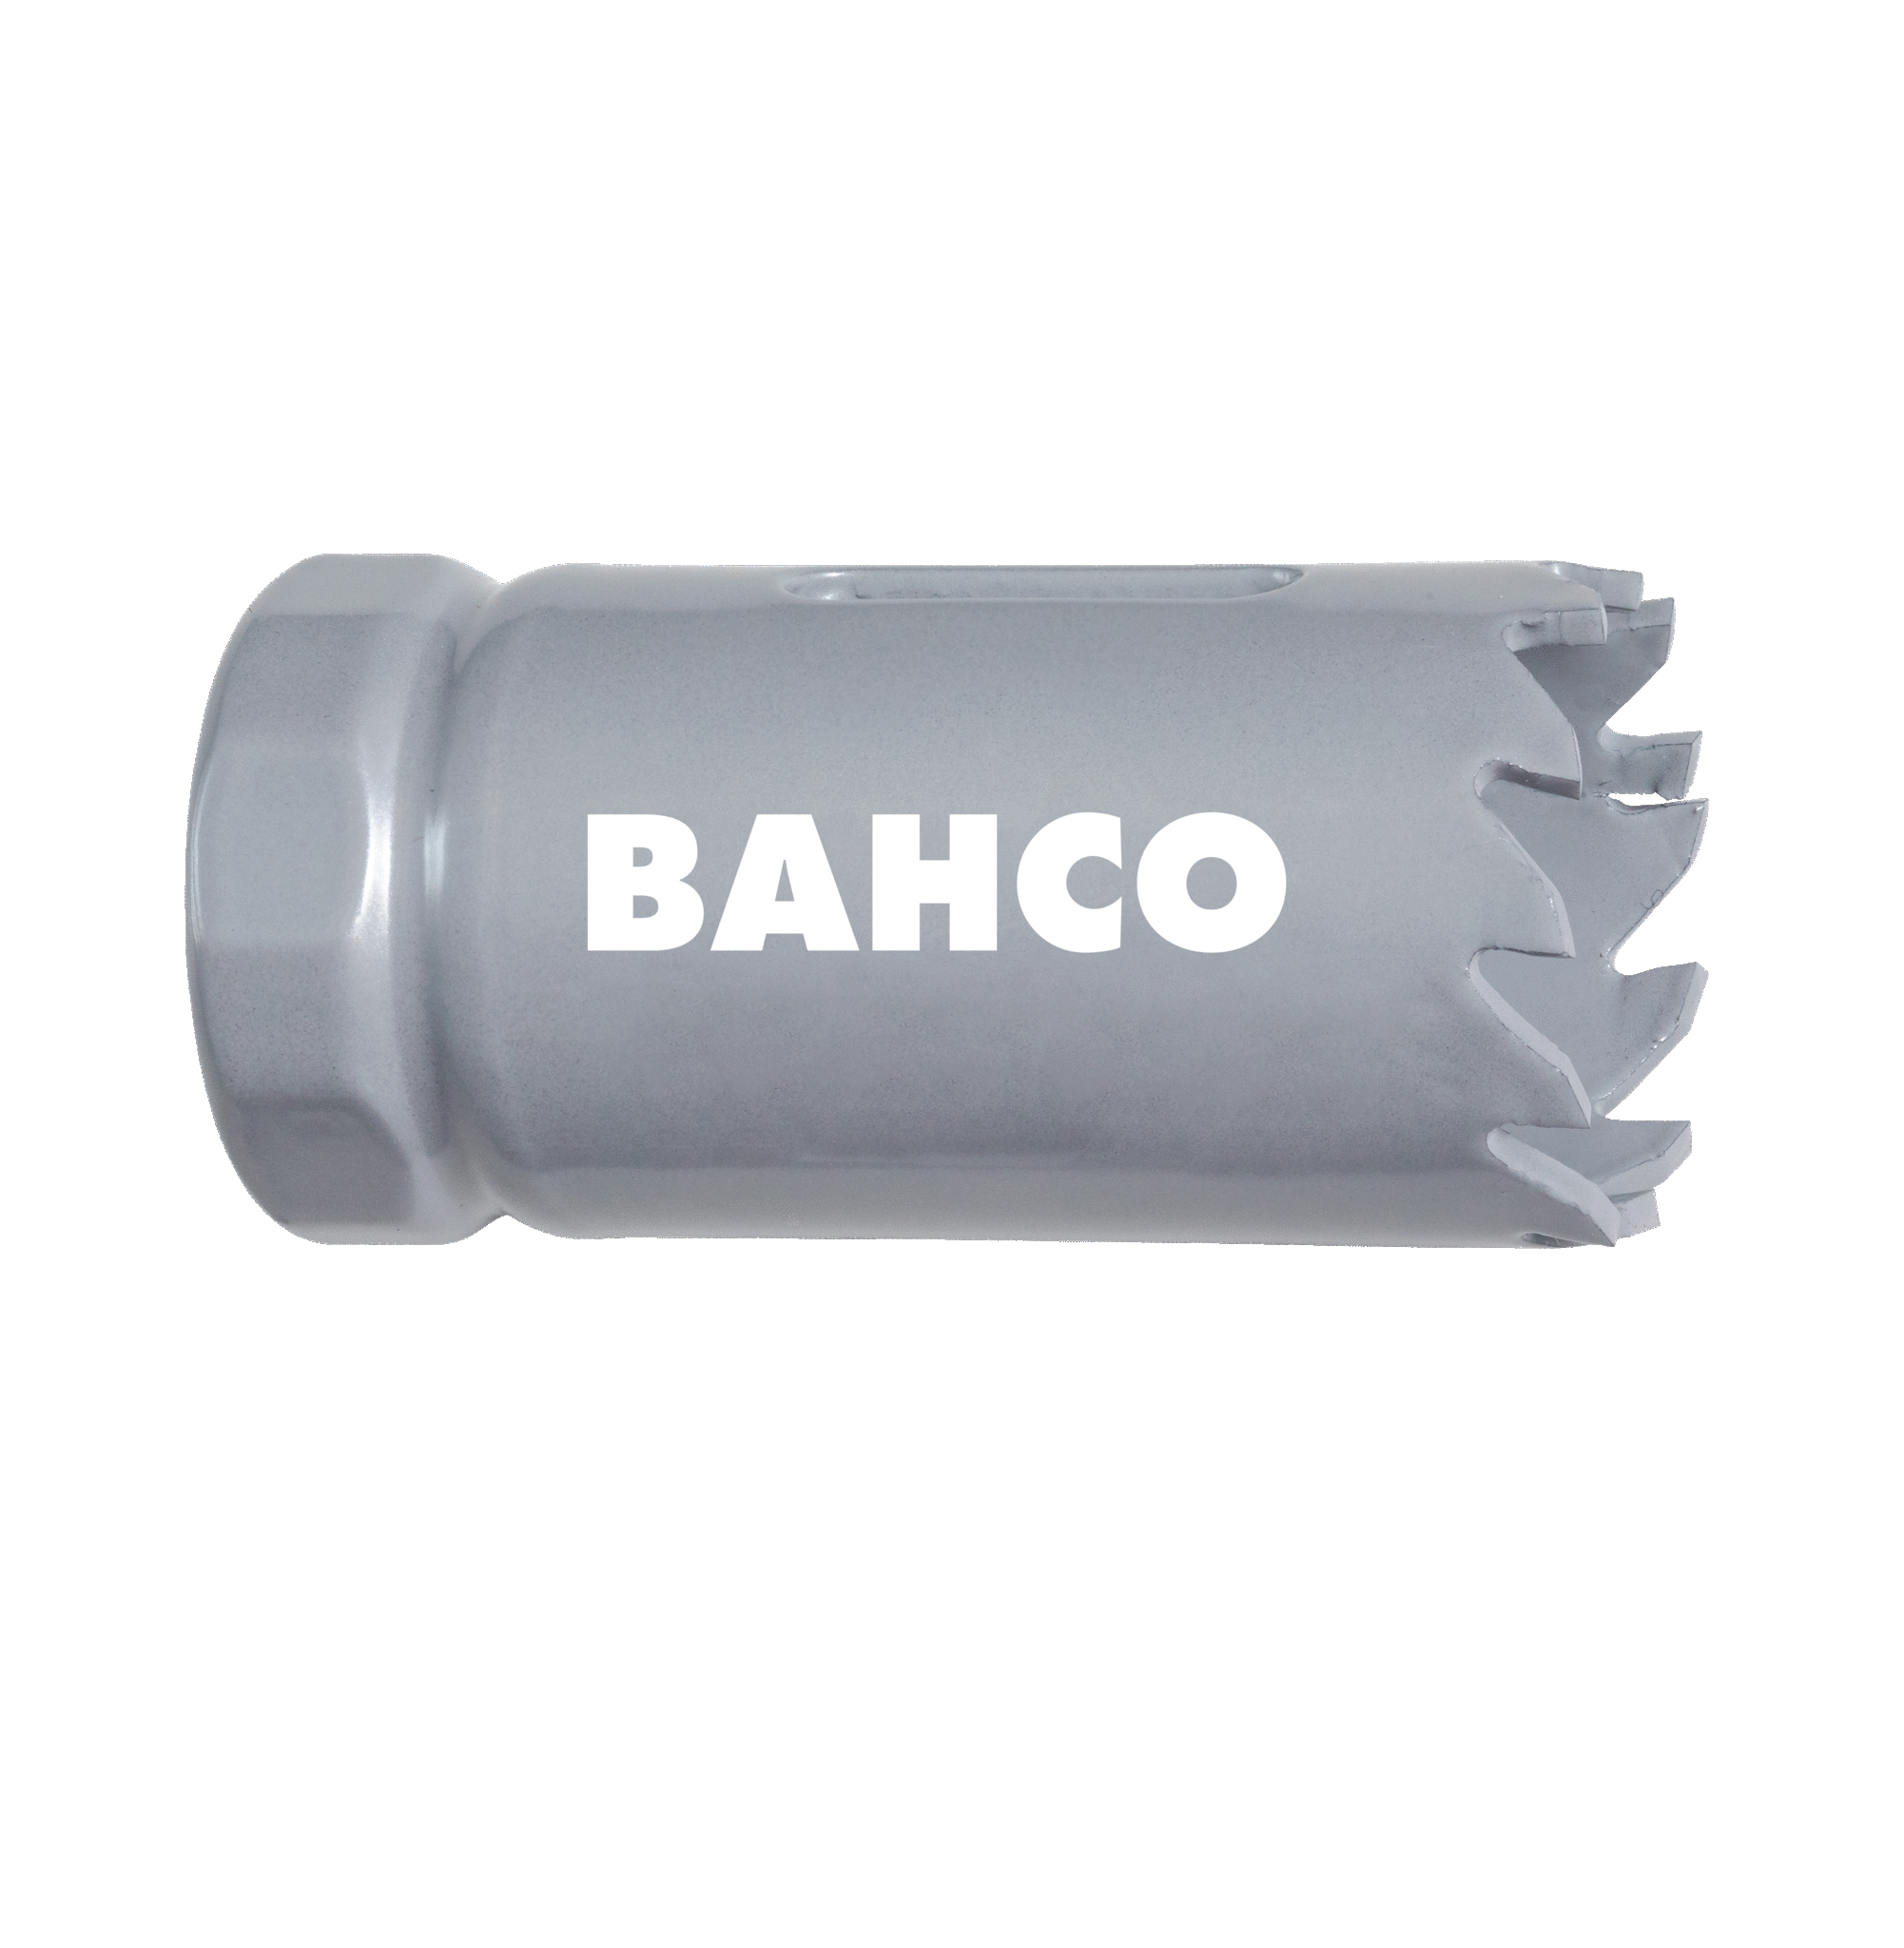 Кольцевые пилы с твердосплавными напайками BAHCO 3832-27